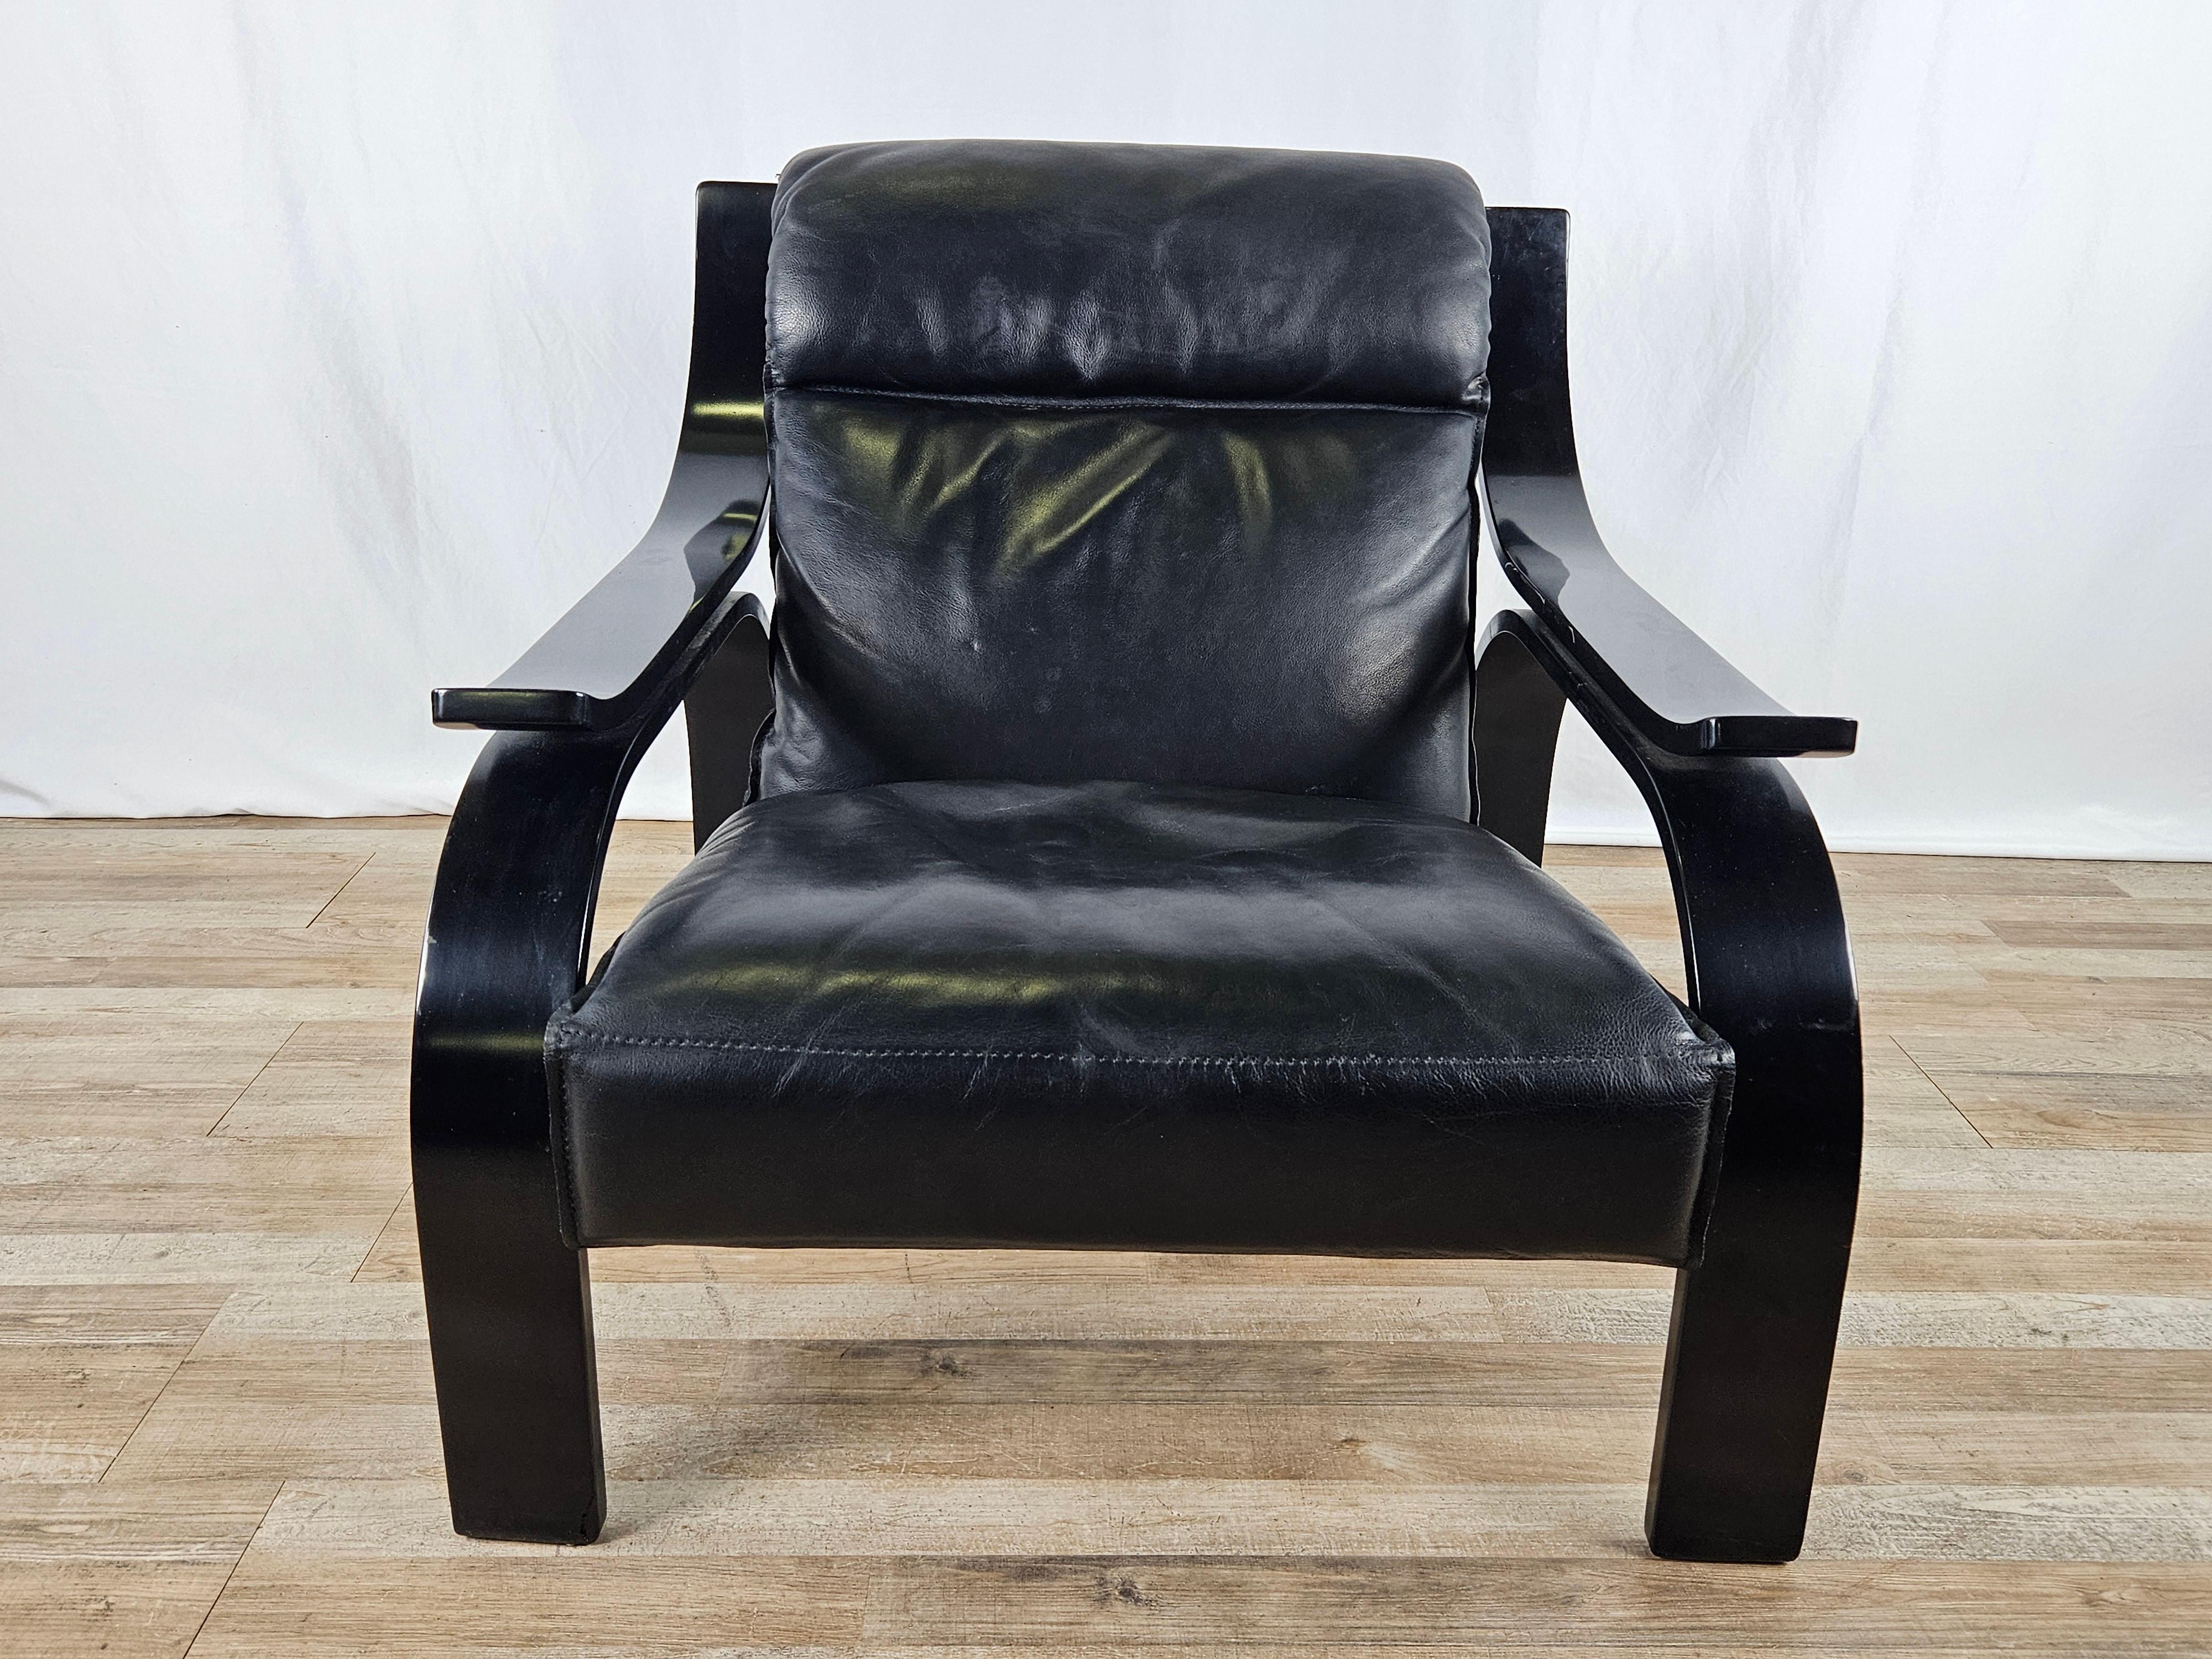 Dieser Woodline-Sessel ist eine Ikone des italienischen Designs der 1960er Jahre. Er wurde 1964 von Marco Zanuso für Arflex entworfen und besteht aus schwarz lackiertem Sperrholz und einem mit hochwertigem schwarzem Leder gepolsterten